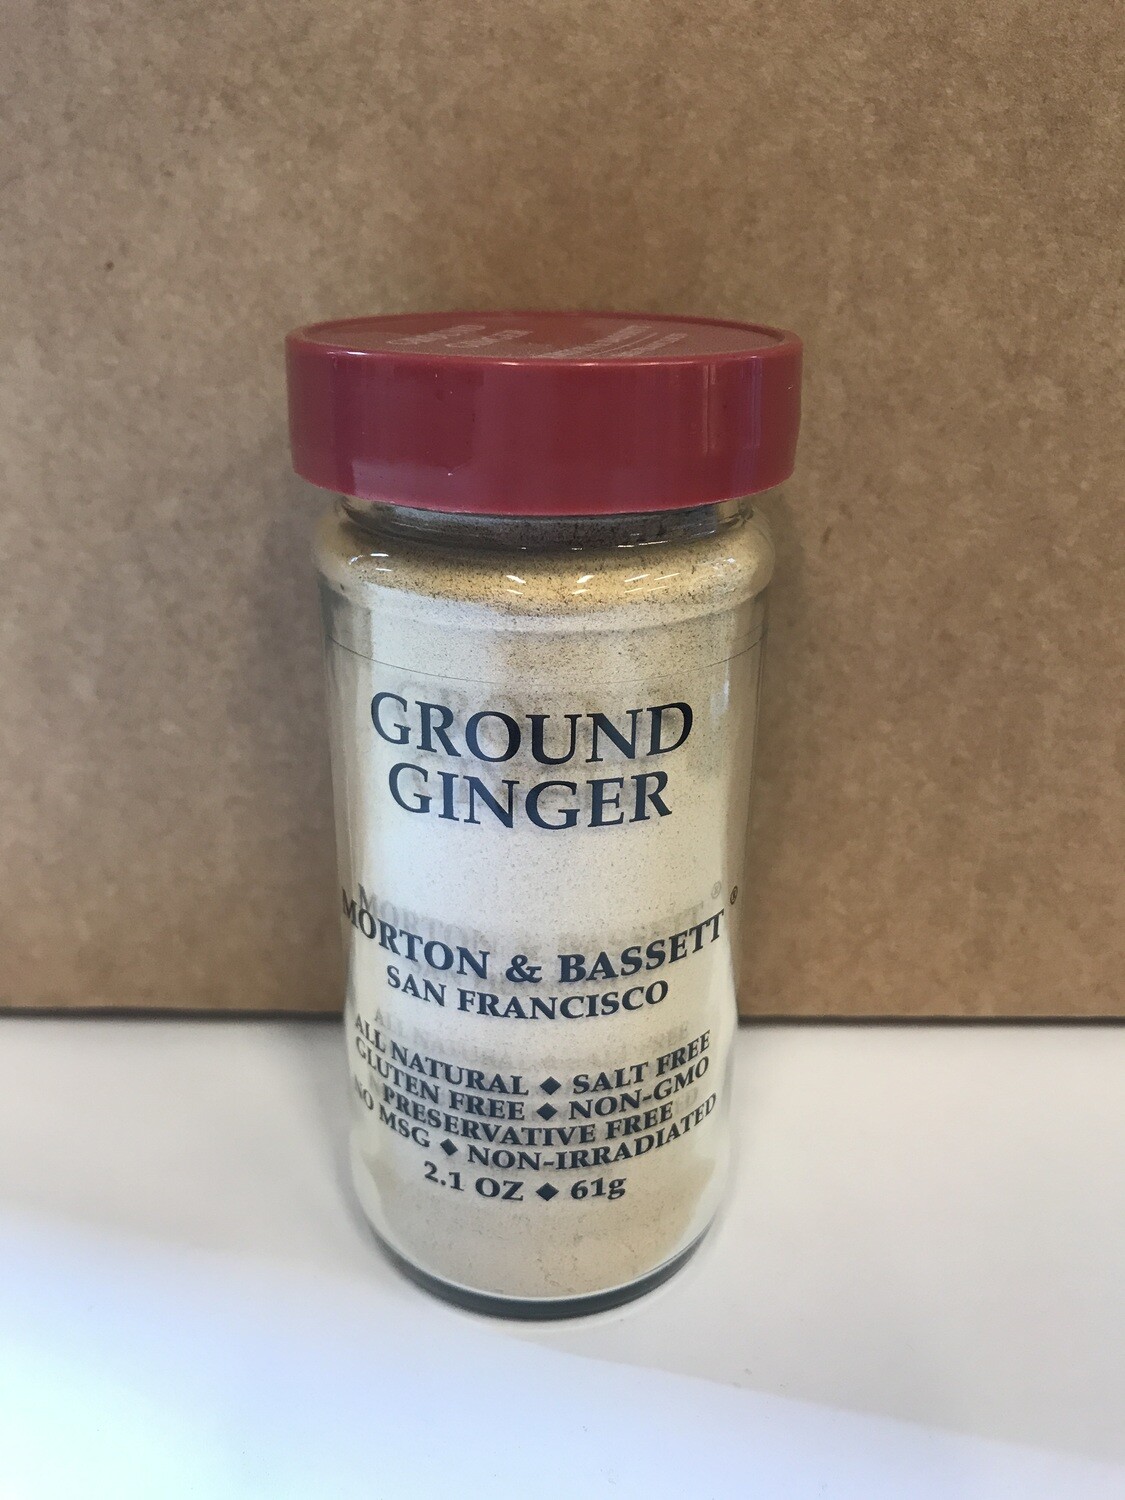 Grocery / Spice / Morton & Bassett Ginger Ground, 2.1 oz